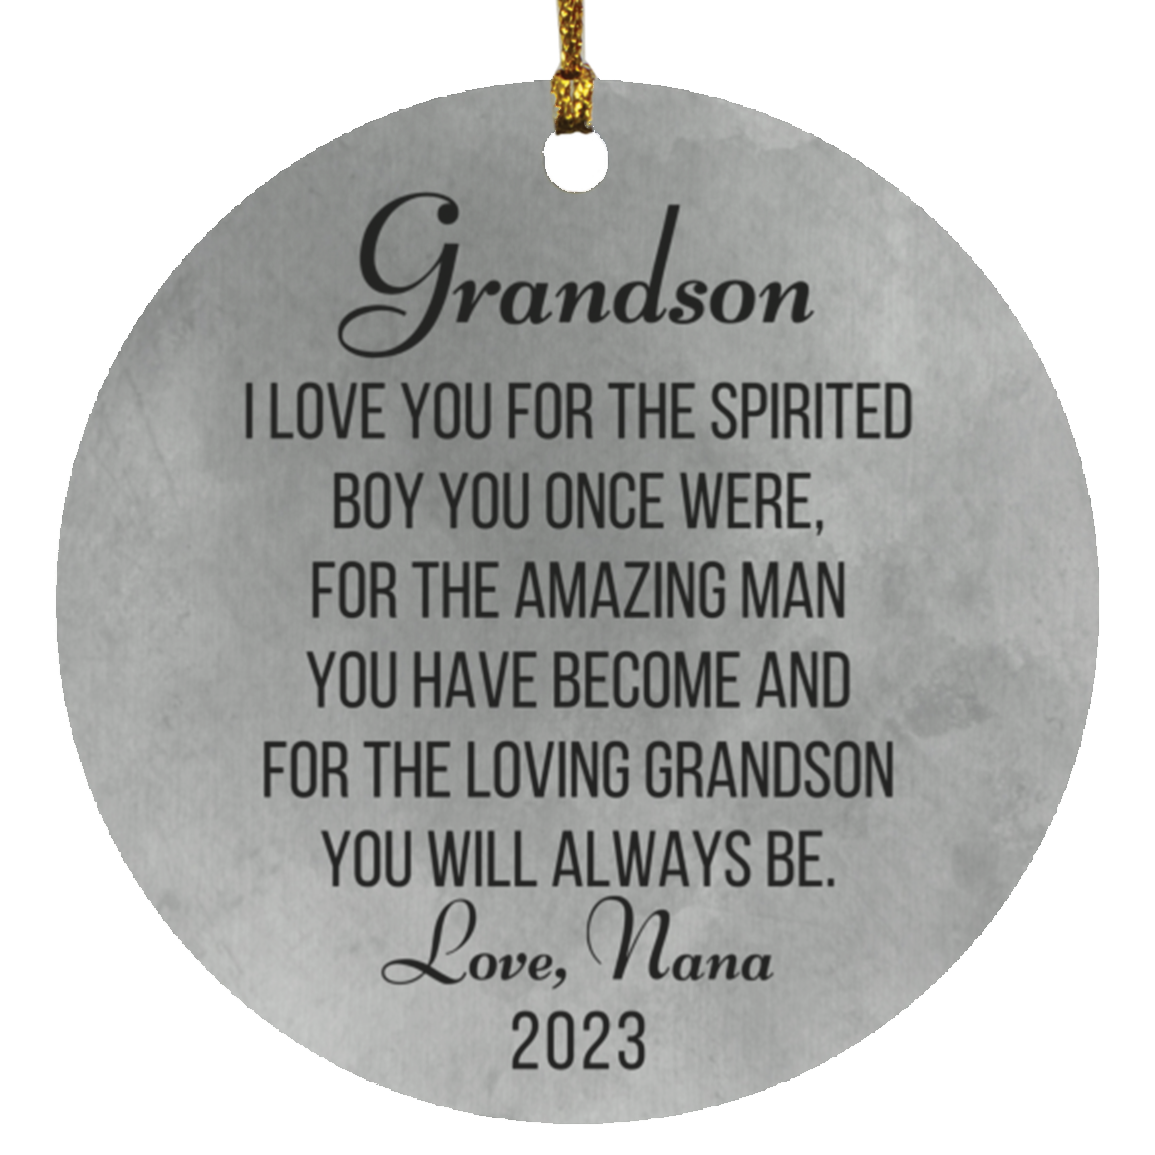 2023 Grandson Ornament Love Nana